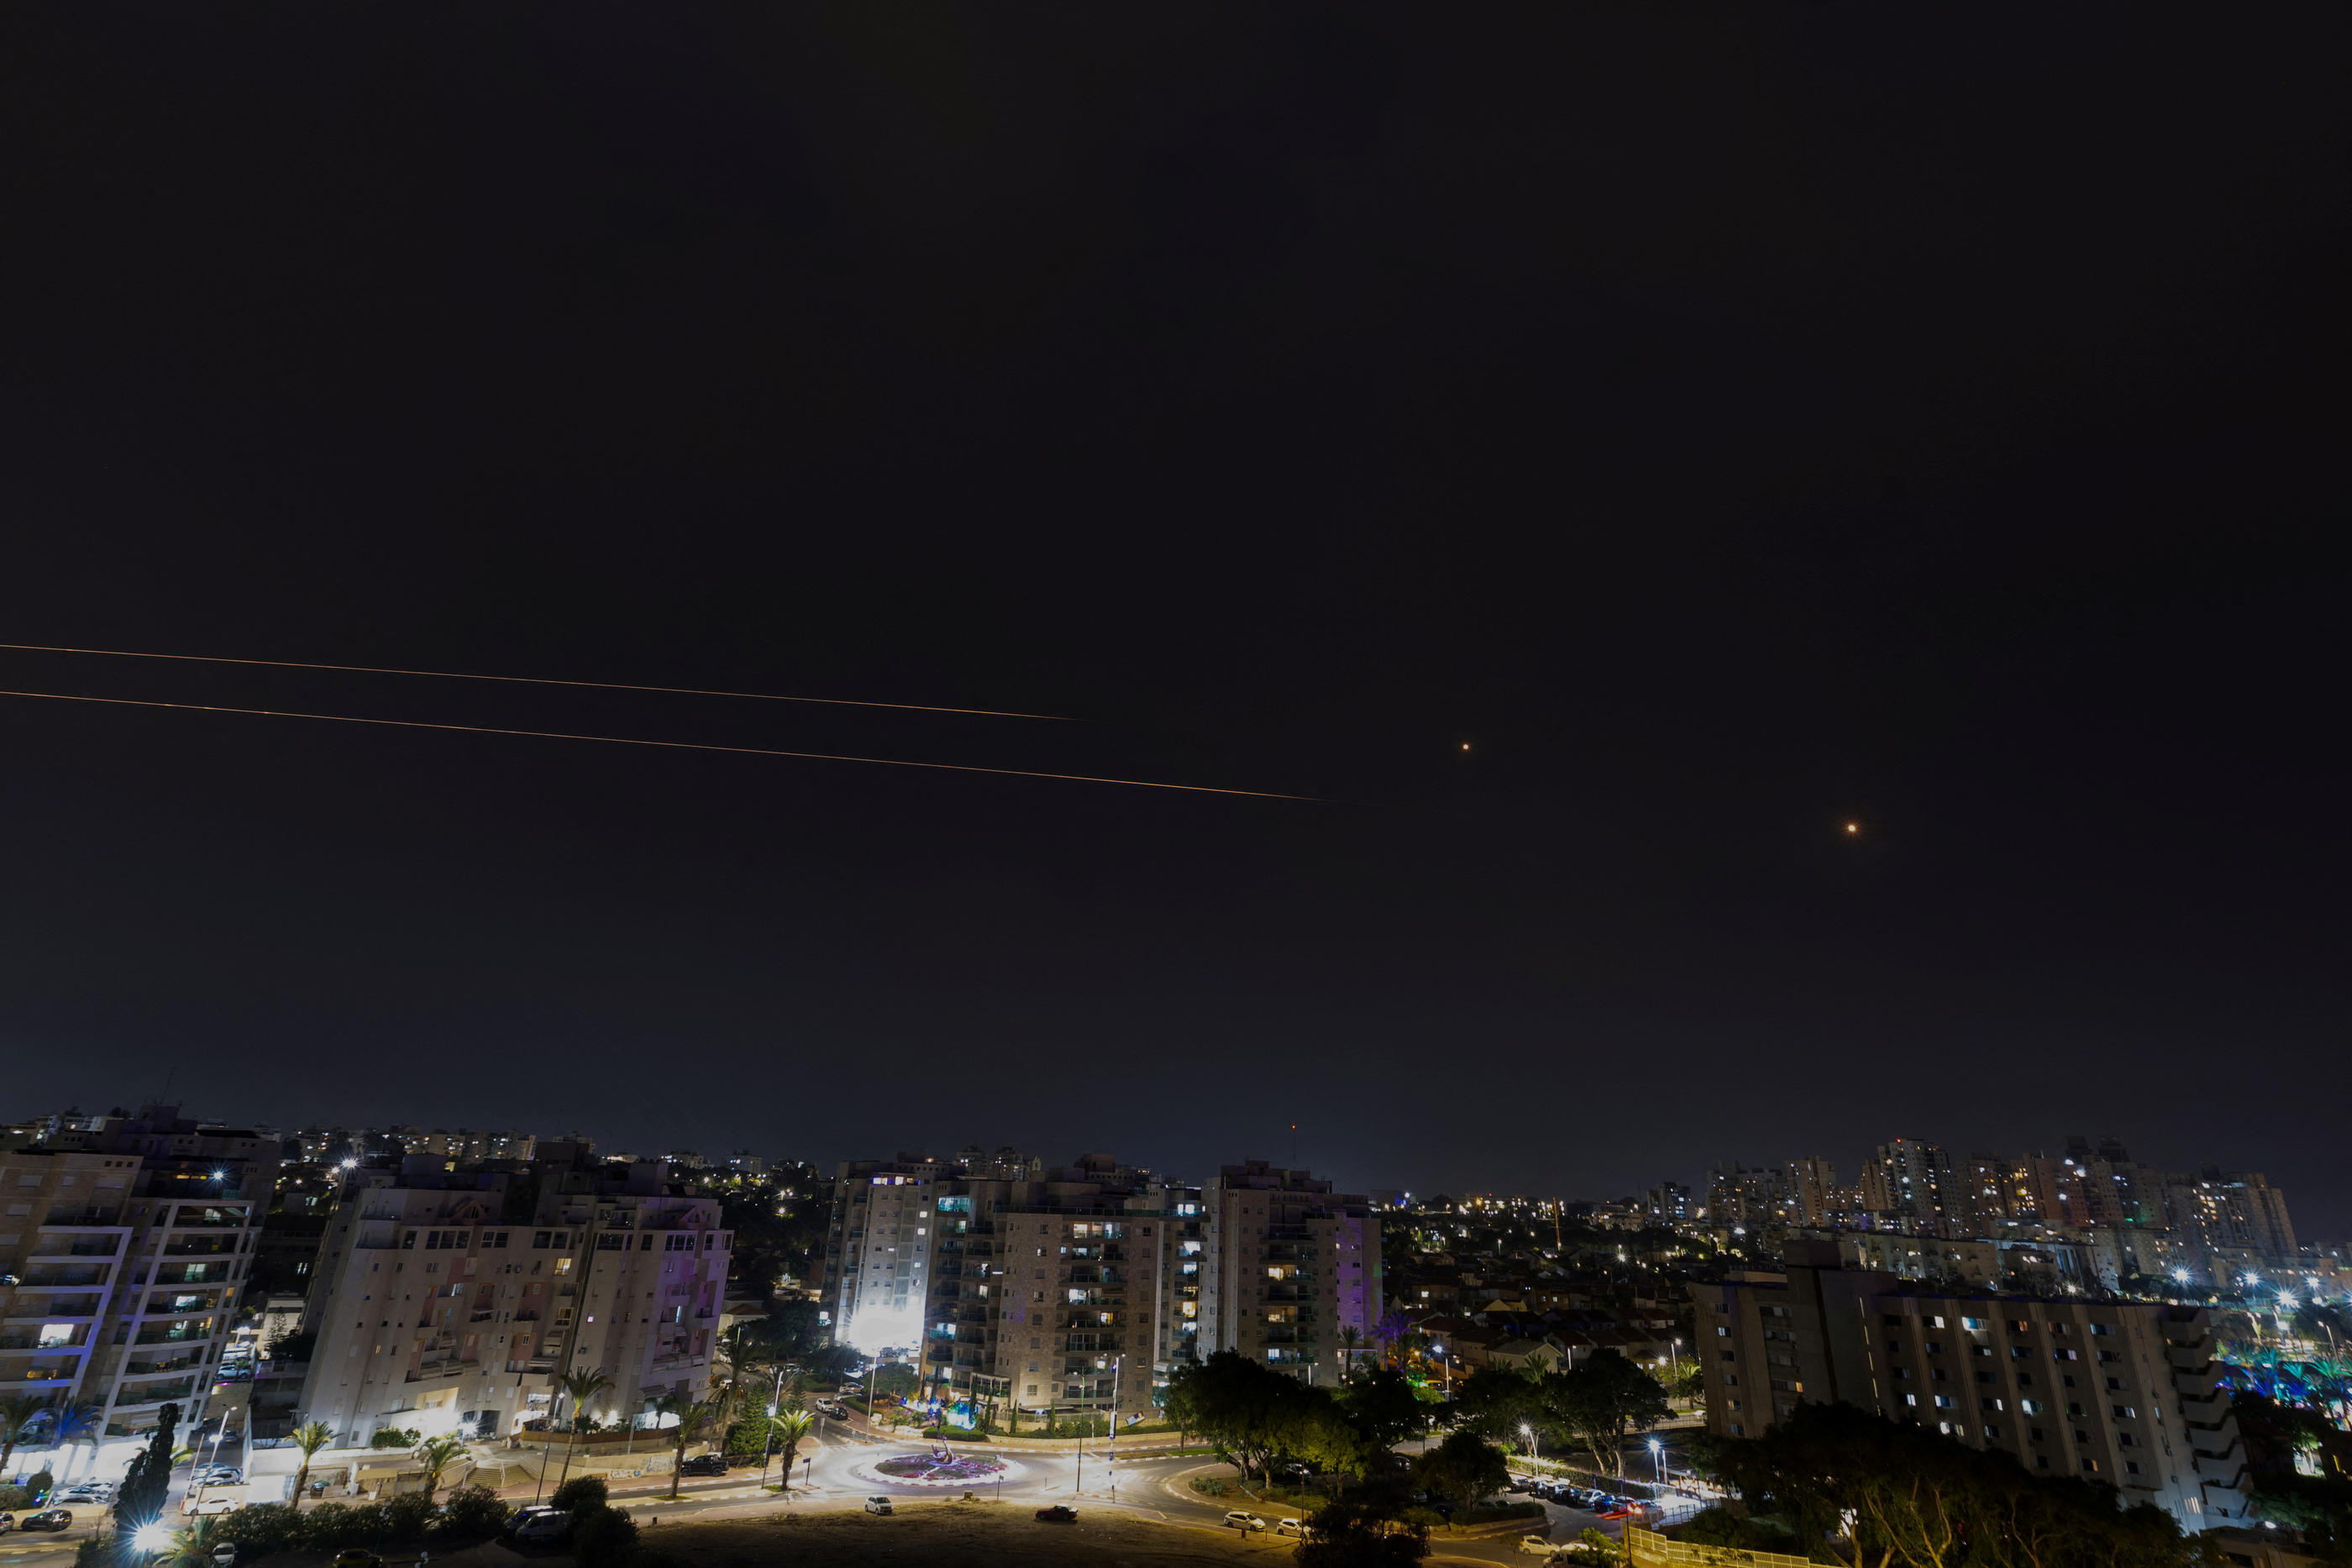 Le Dôme de fer, le système antimissiles israélien, vu d'Ashkelon dans le sud d'Israël, intercepte des roquettes lancées depuis la bande de Gaza, le 27 octobre. REUTERS/Amir Cohen